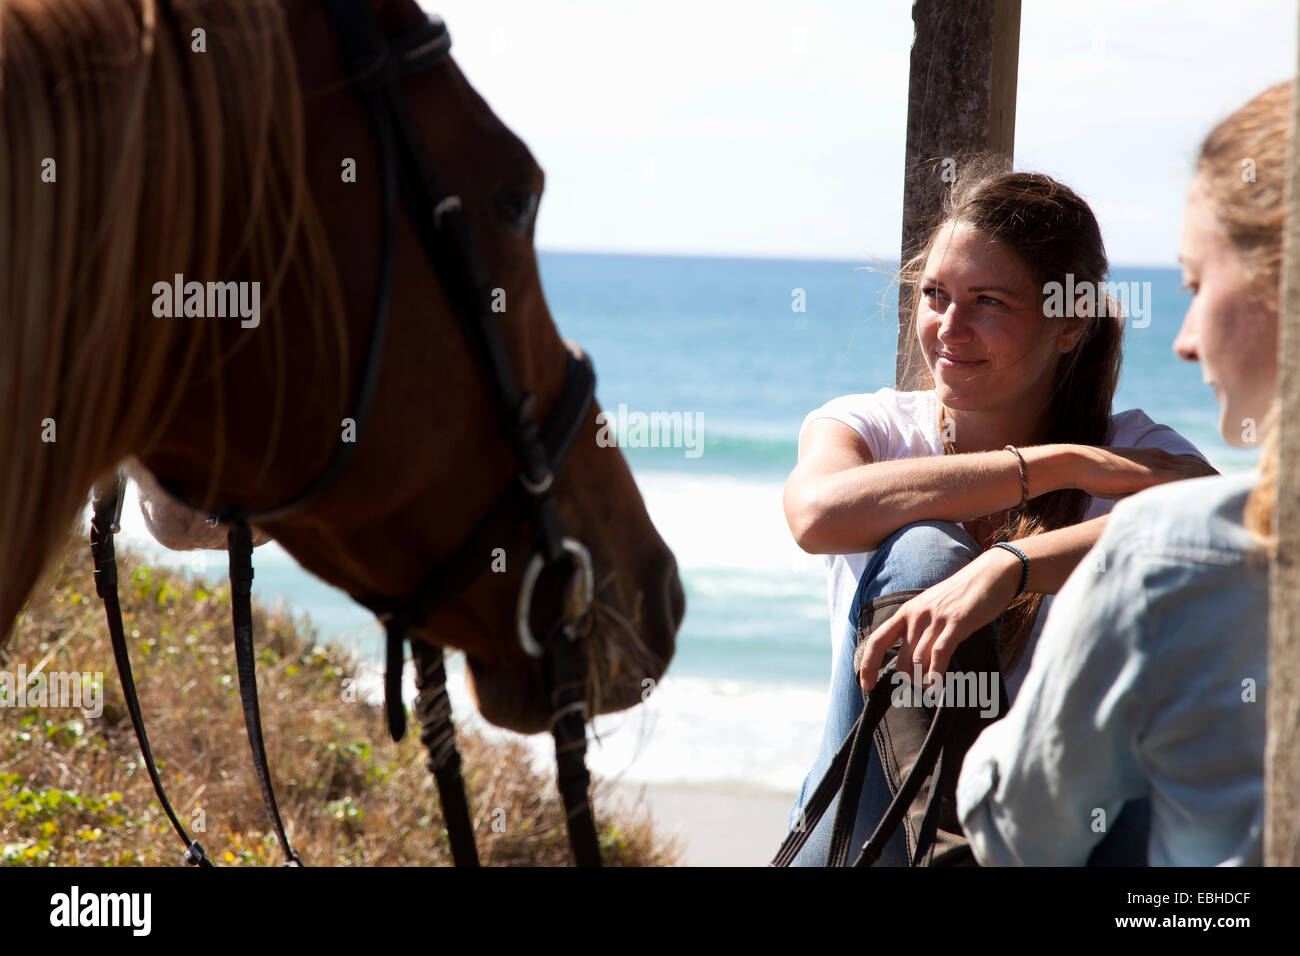 Horse riders taking break, Pakiri Beach, Auckland, New Zealand Stock Photo